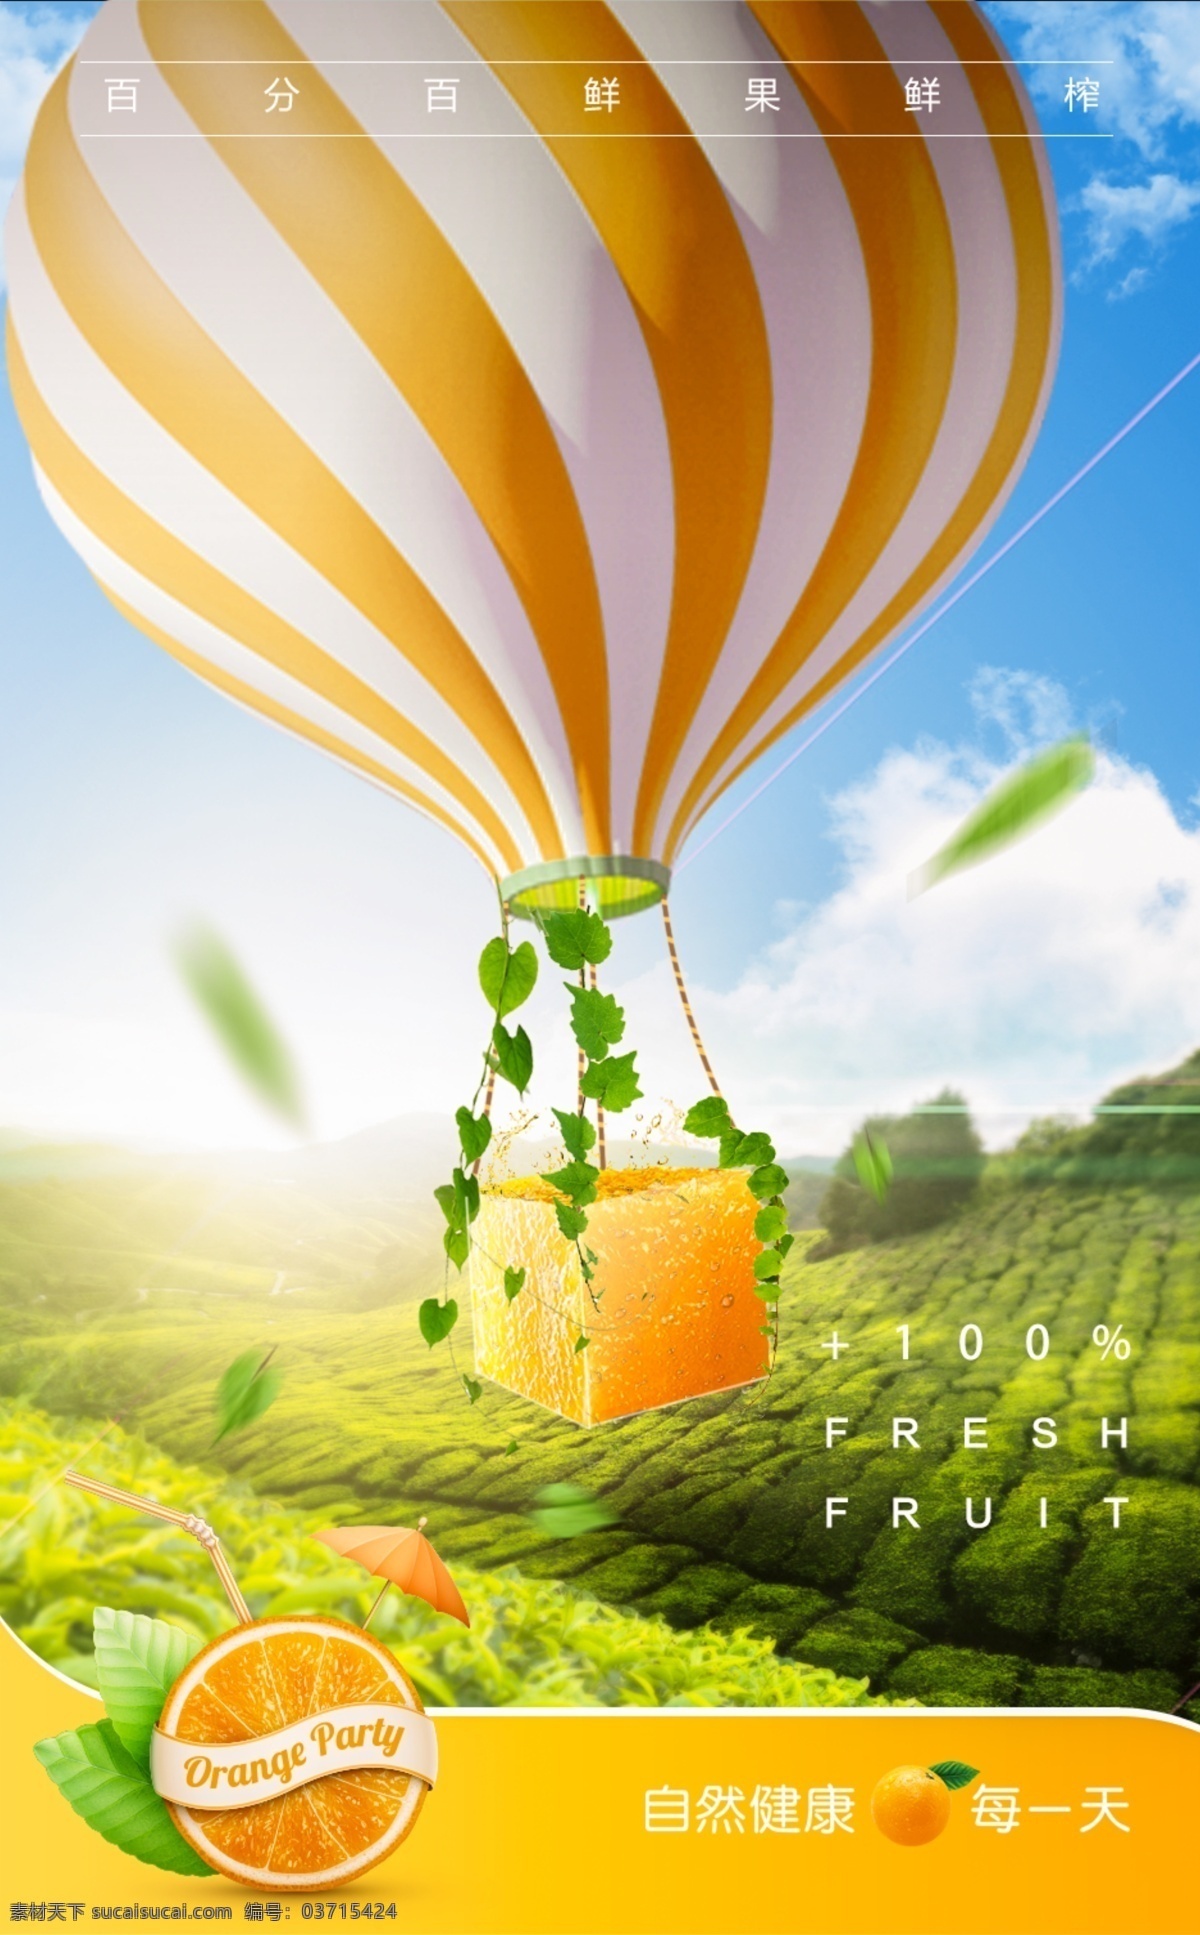 鲜榨 果汁 果园 热气球 创意 海报 水果园 创意橙子 茶园 绿色 田园